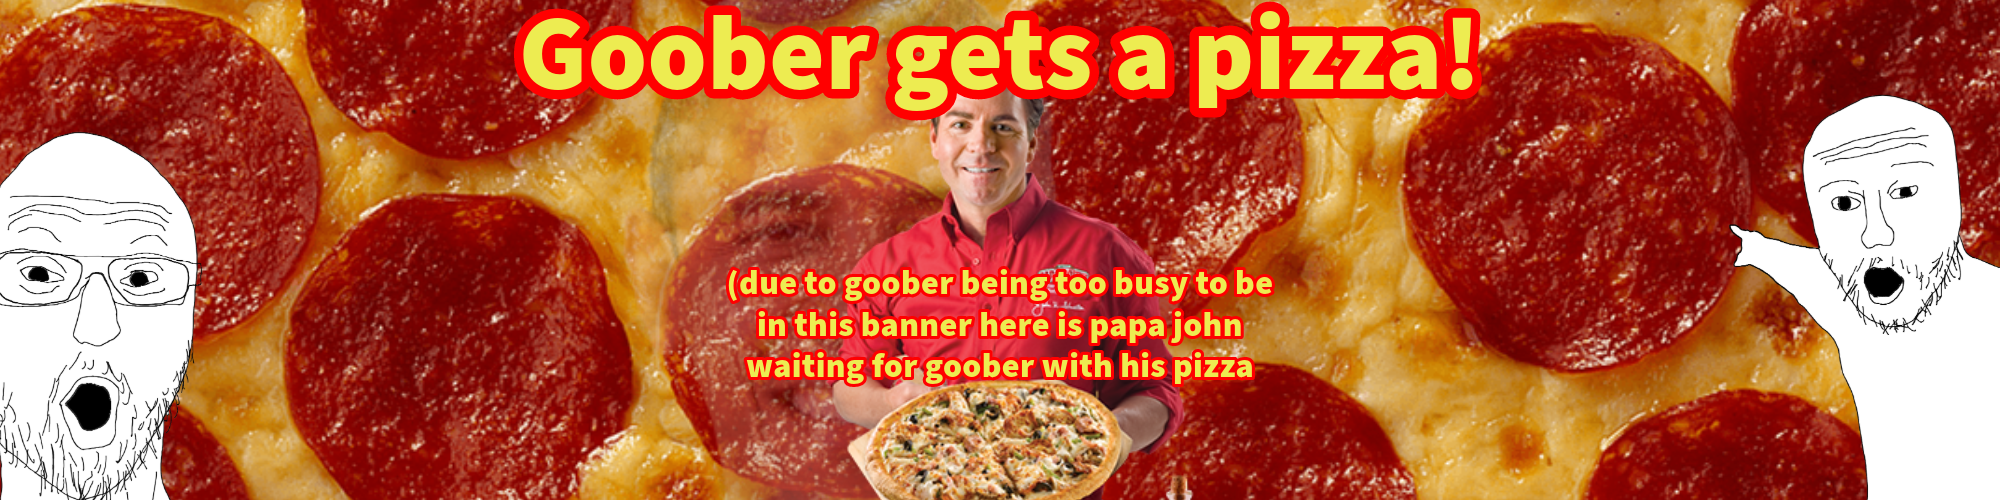 Goober gets a pizza!